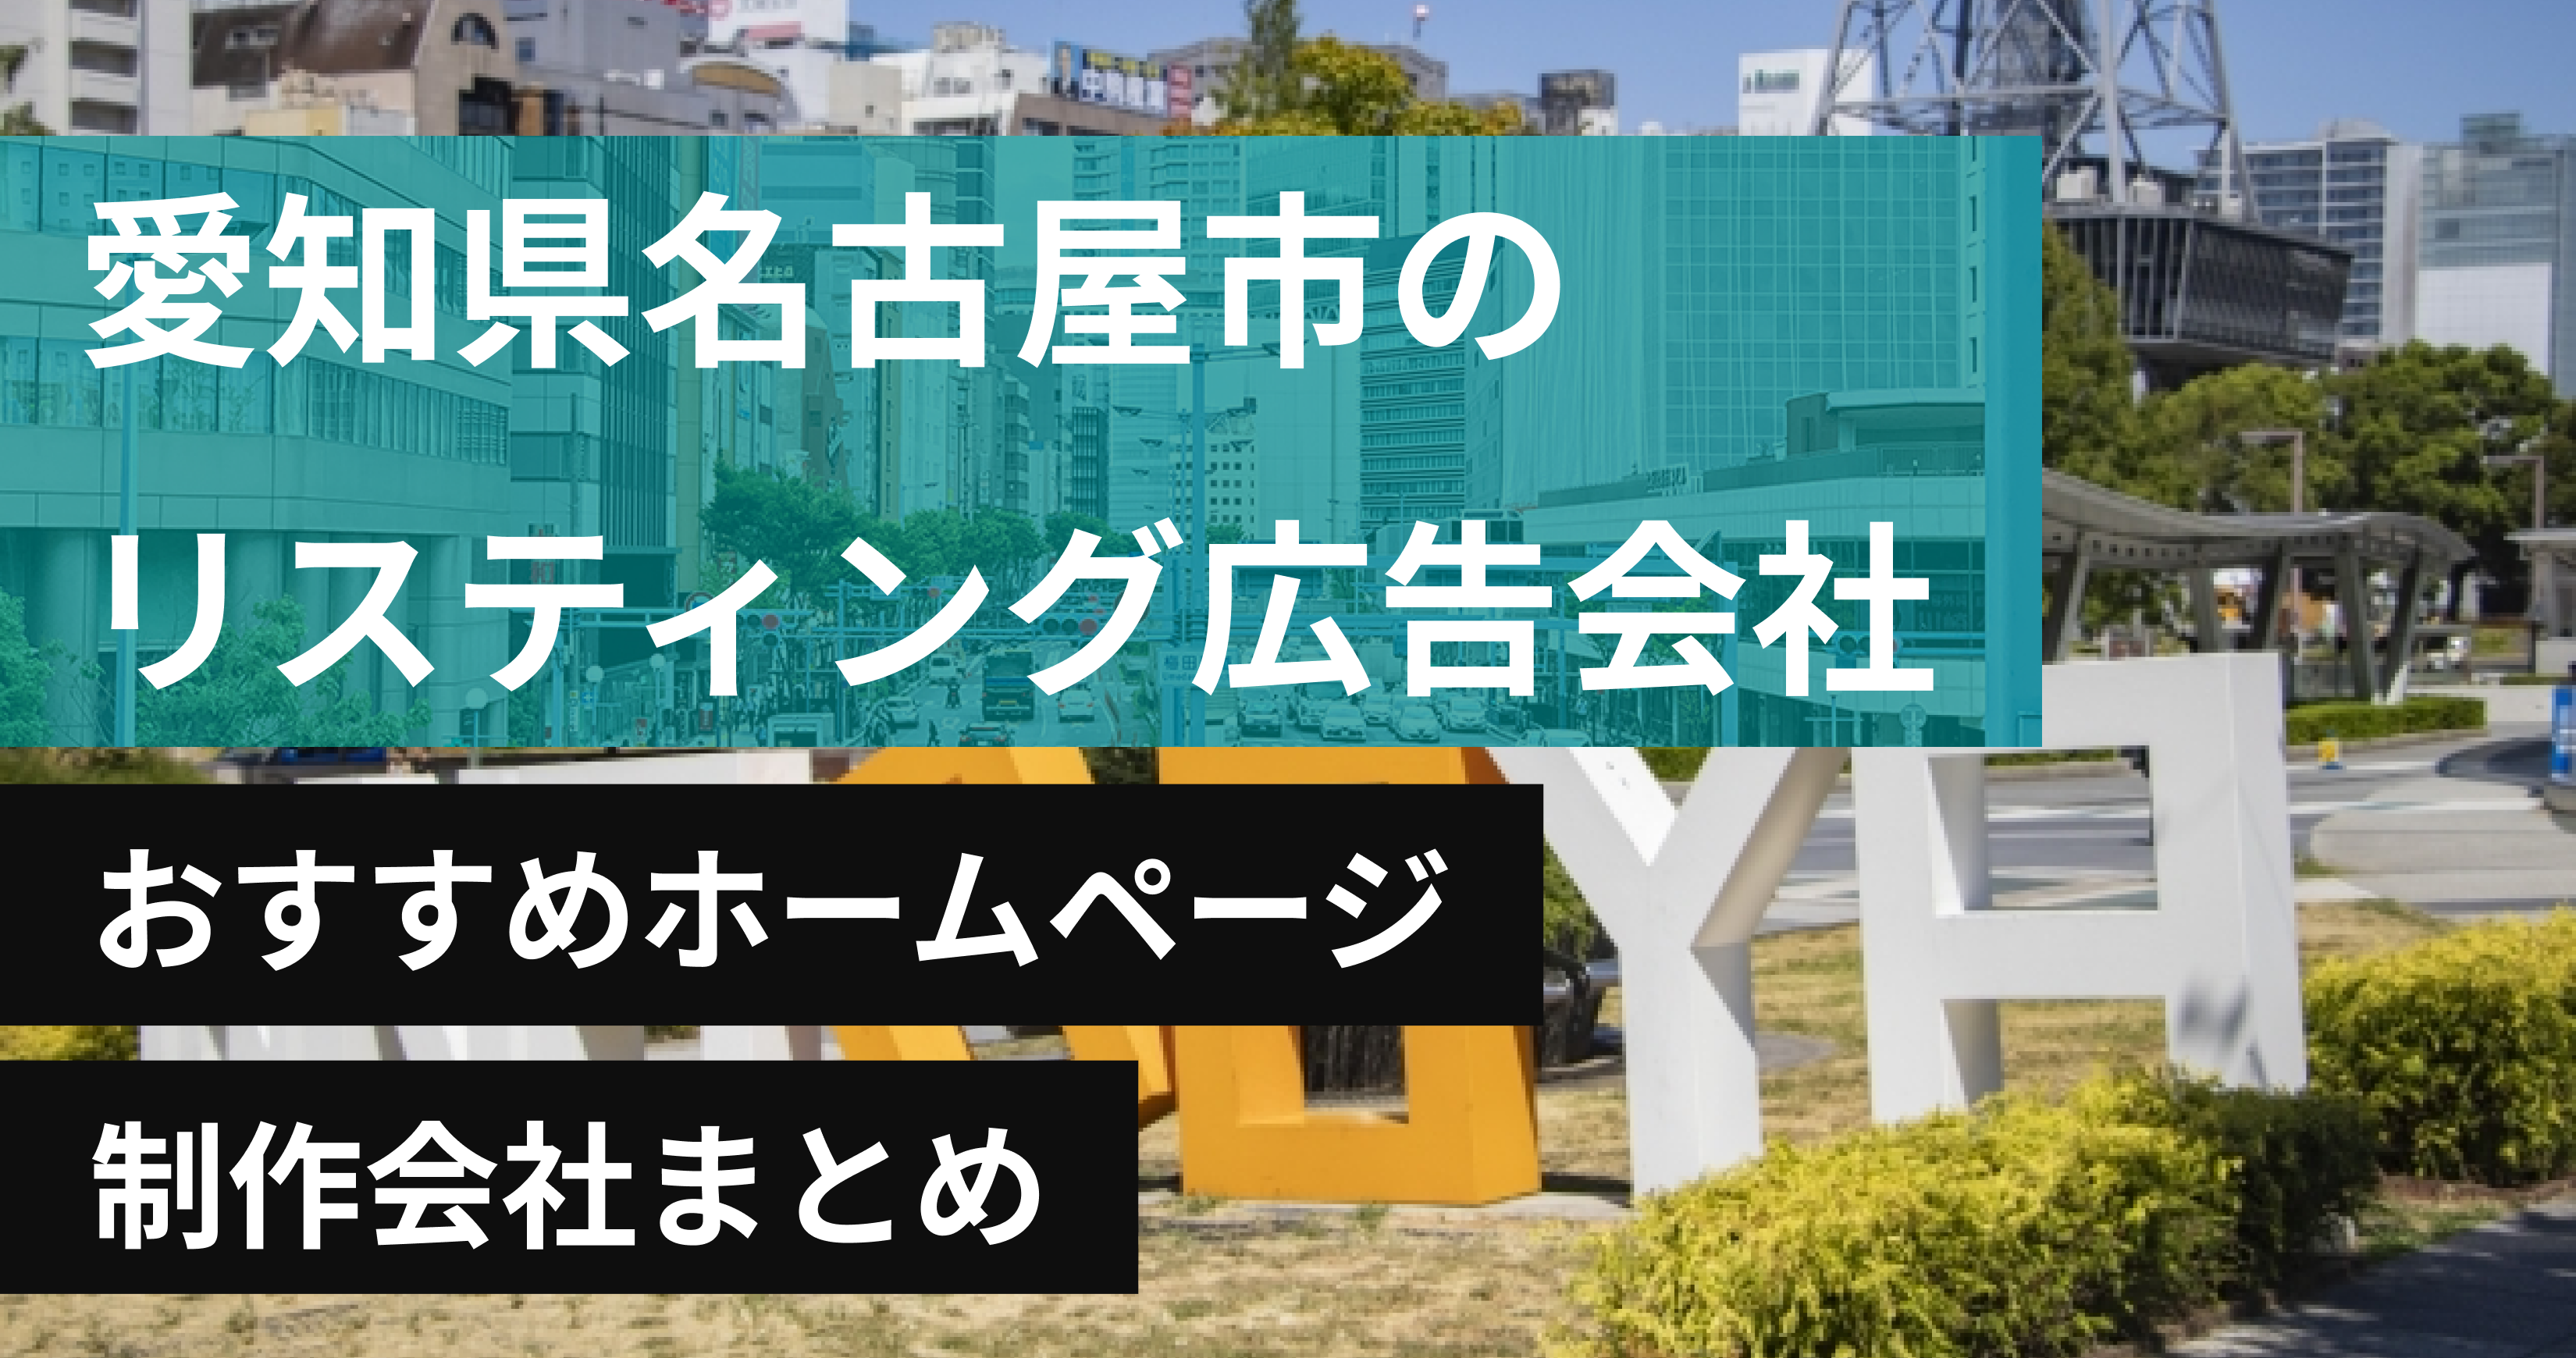 愛知県名古屋市のリスティング広告会社に強いおすすめホームページ制作会社8選